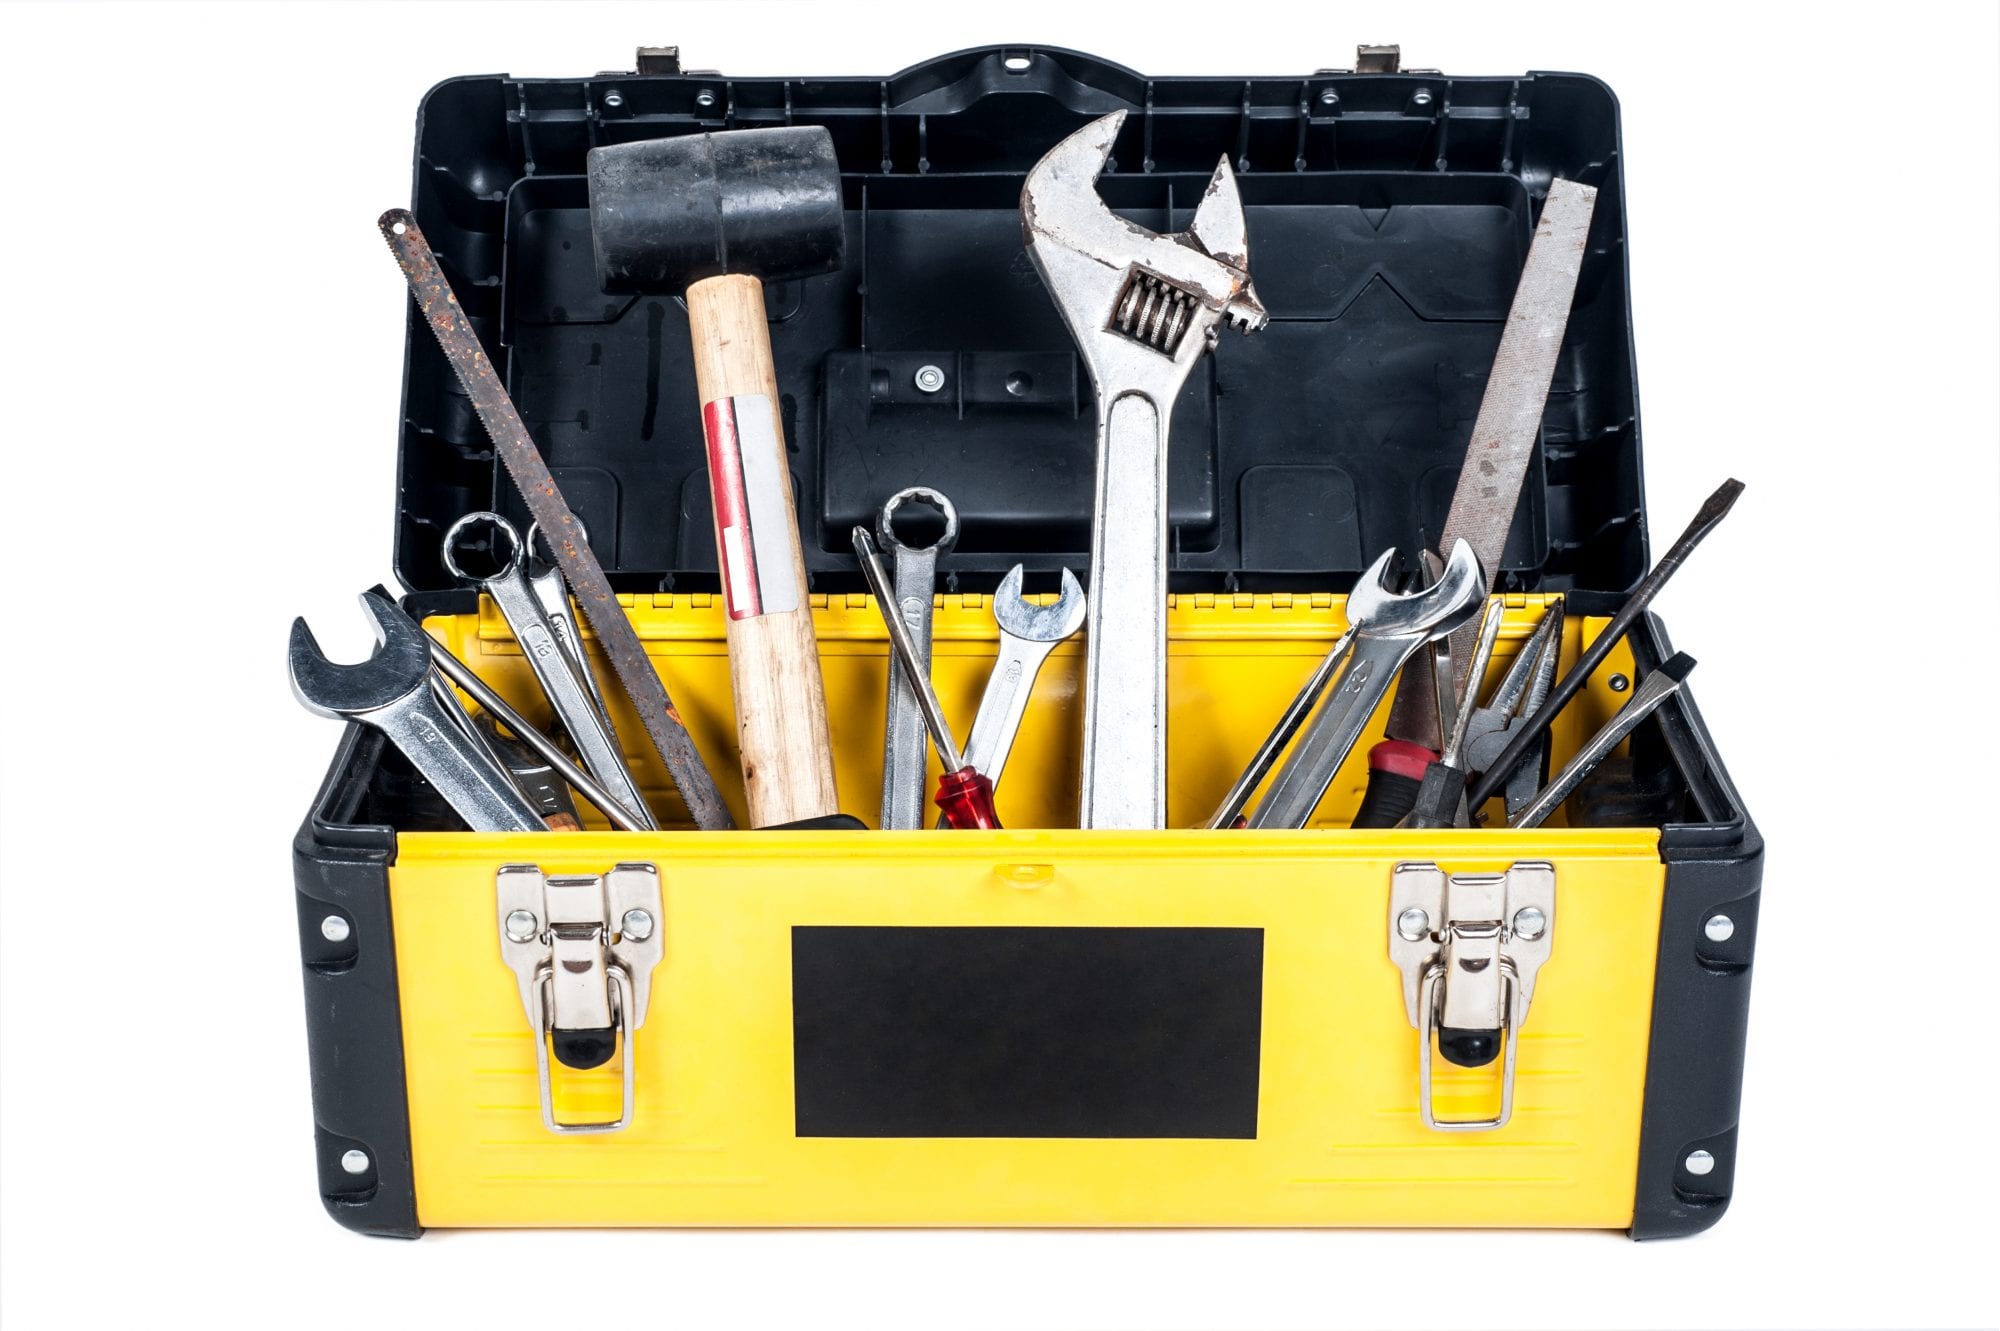 Engine Maintenance Tool Kit Essentials